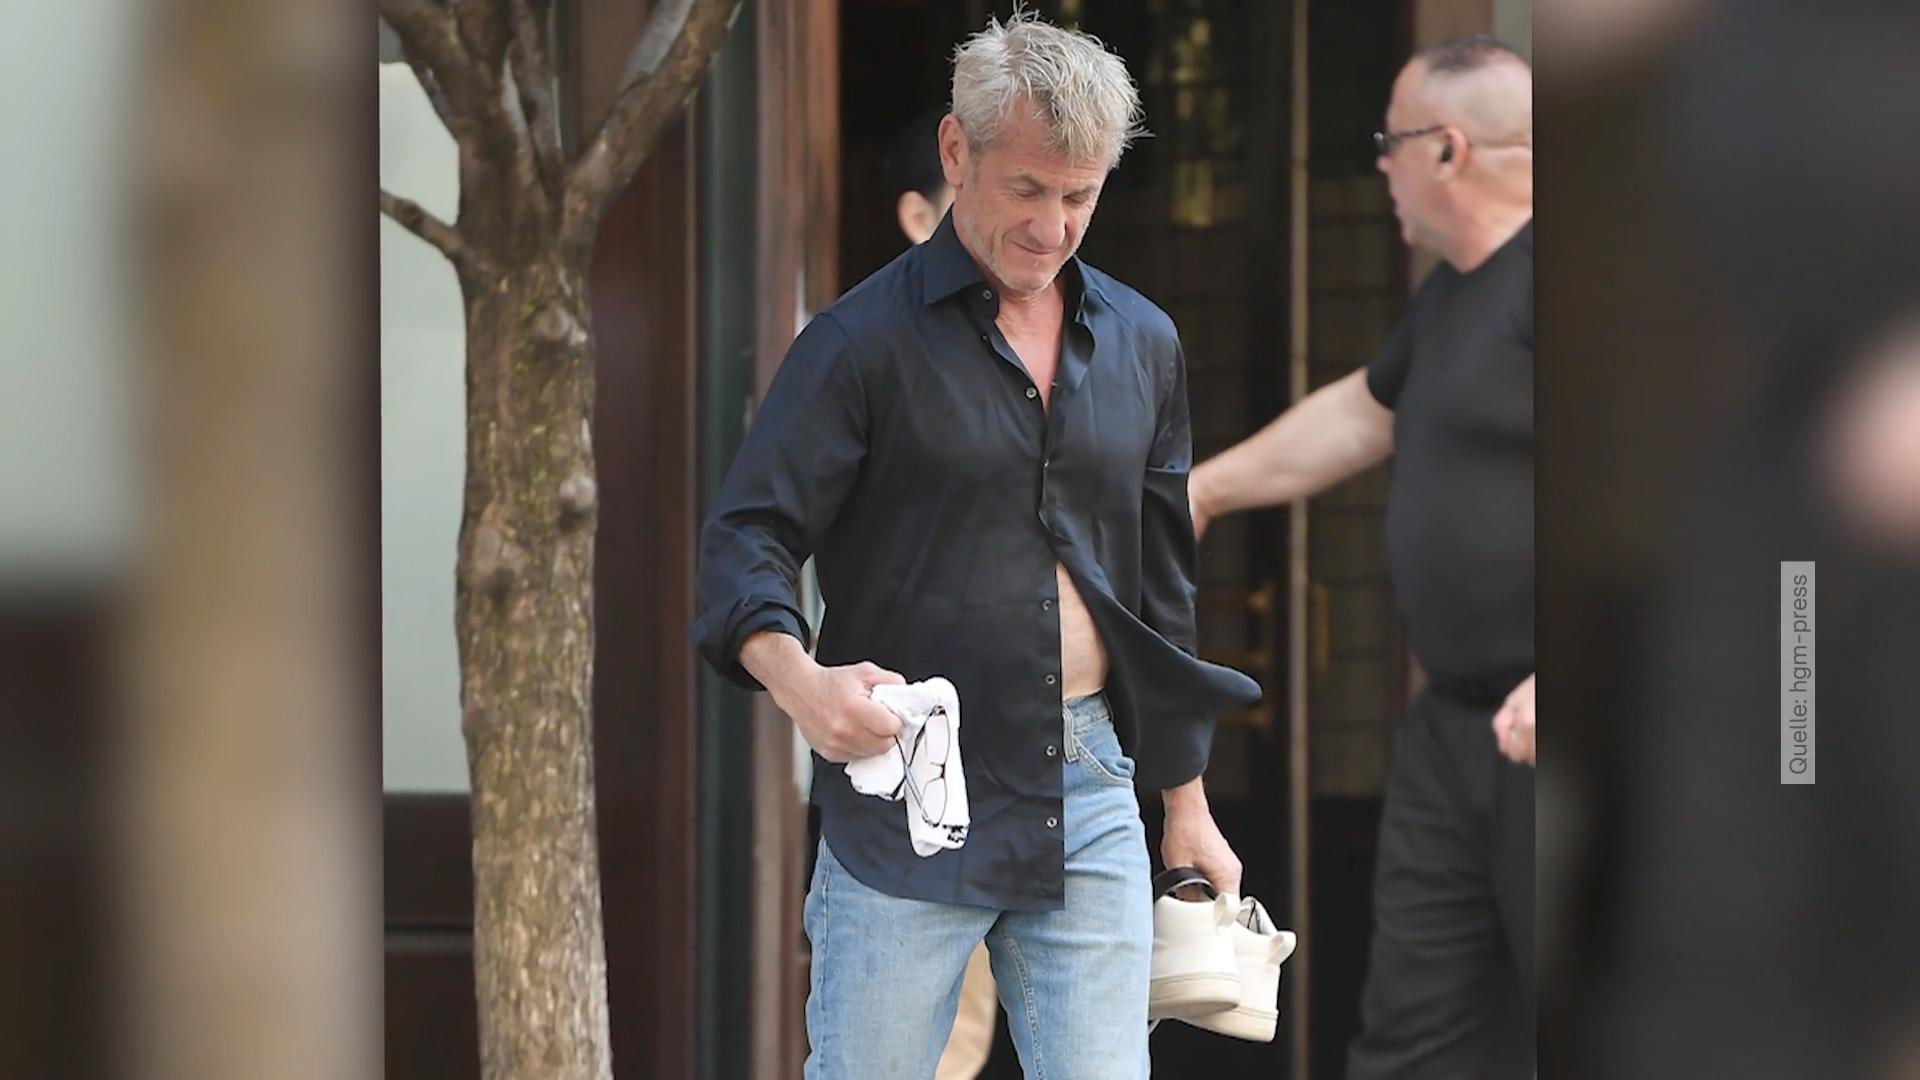 ¿Qué hace Sean Penn descalzo en la calle?  Viajar sin zapatos